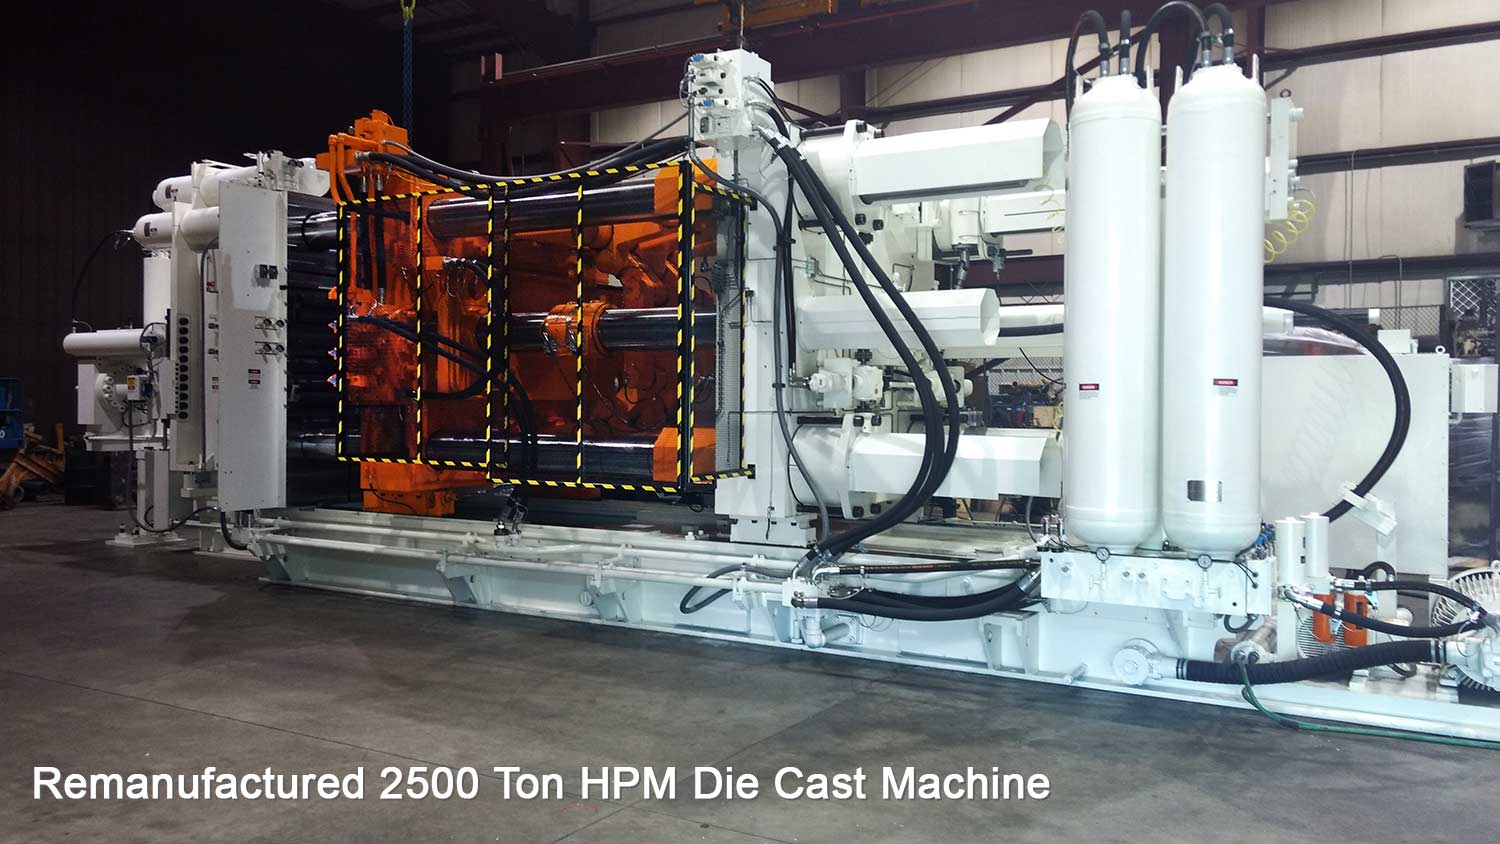 Remanufactured 2500 Ton HPM Die Cast Machine